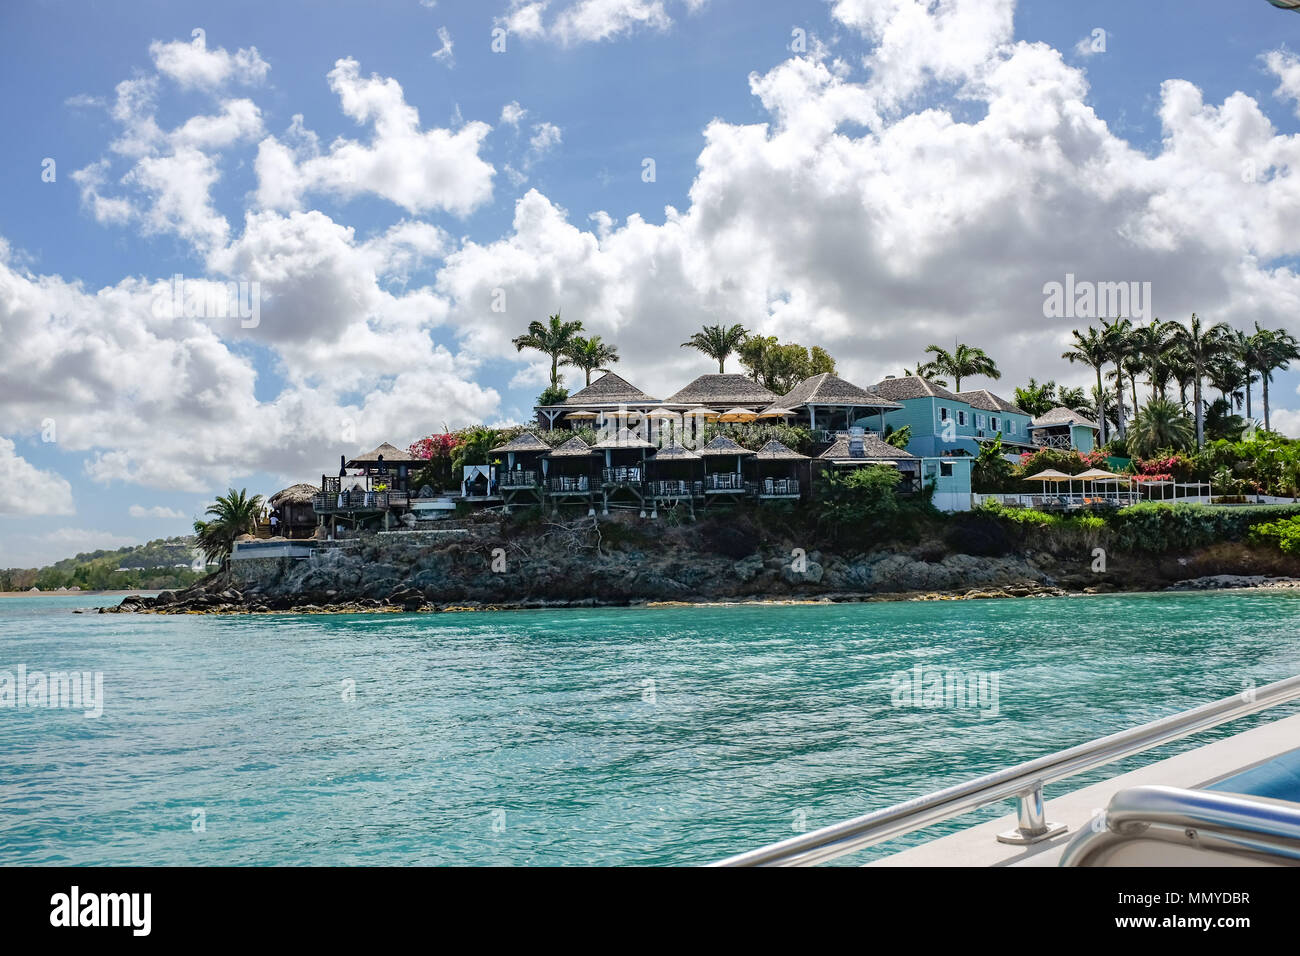 Antigua Piccole Antille isole dei Caraibi West Indies - lusso esclusivo costa case e alberghi Foto Stock